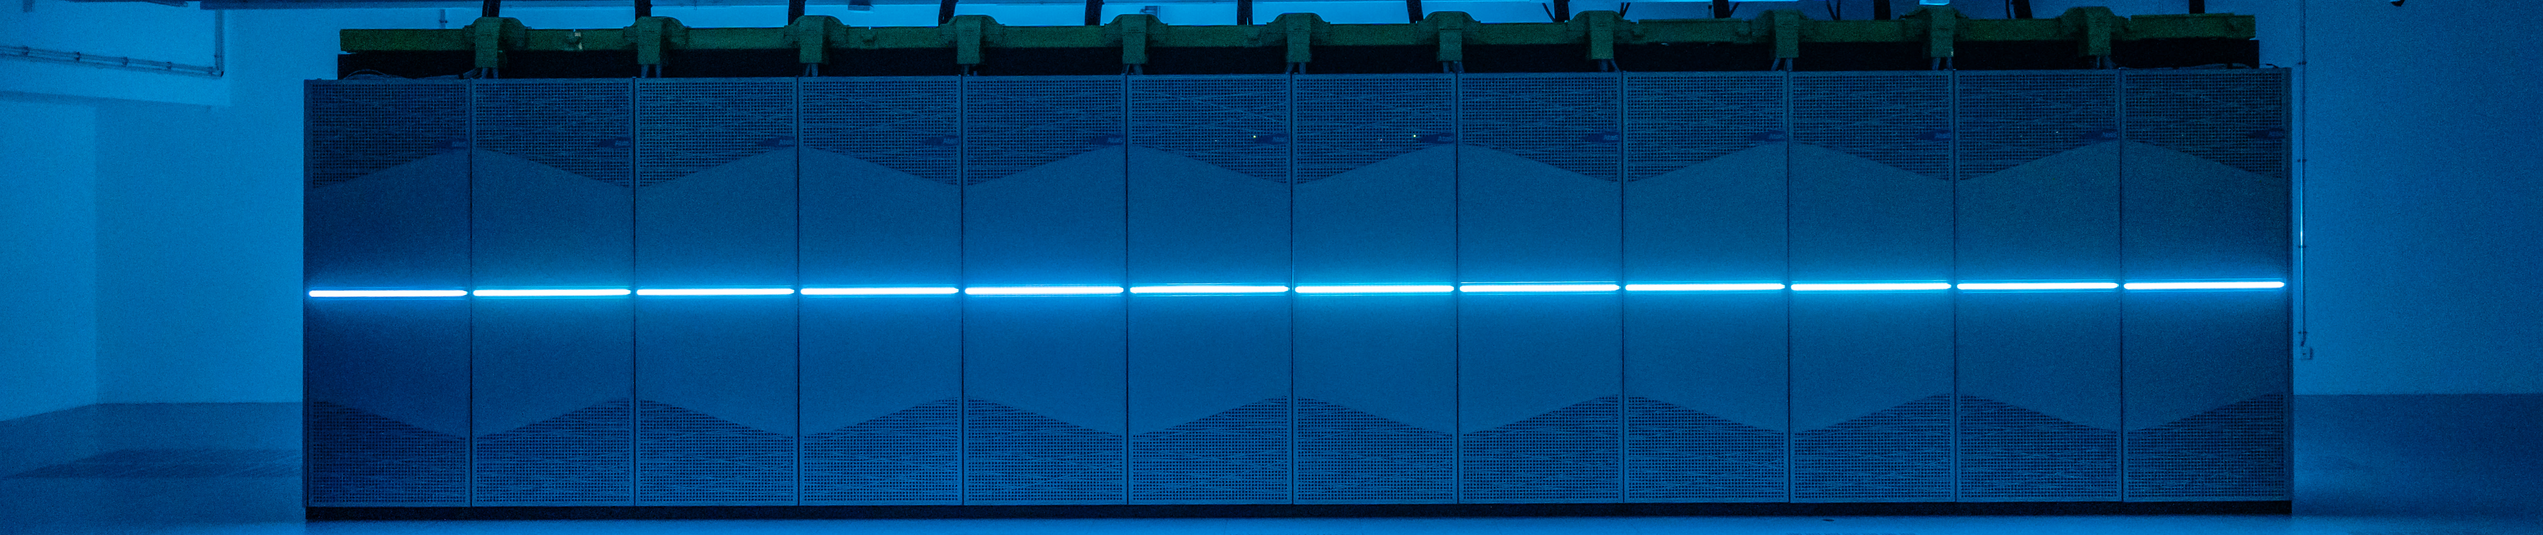 Abbildung eines Großrechners, blau beleuchtet